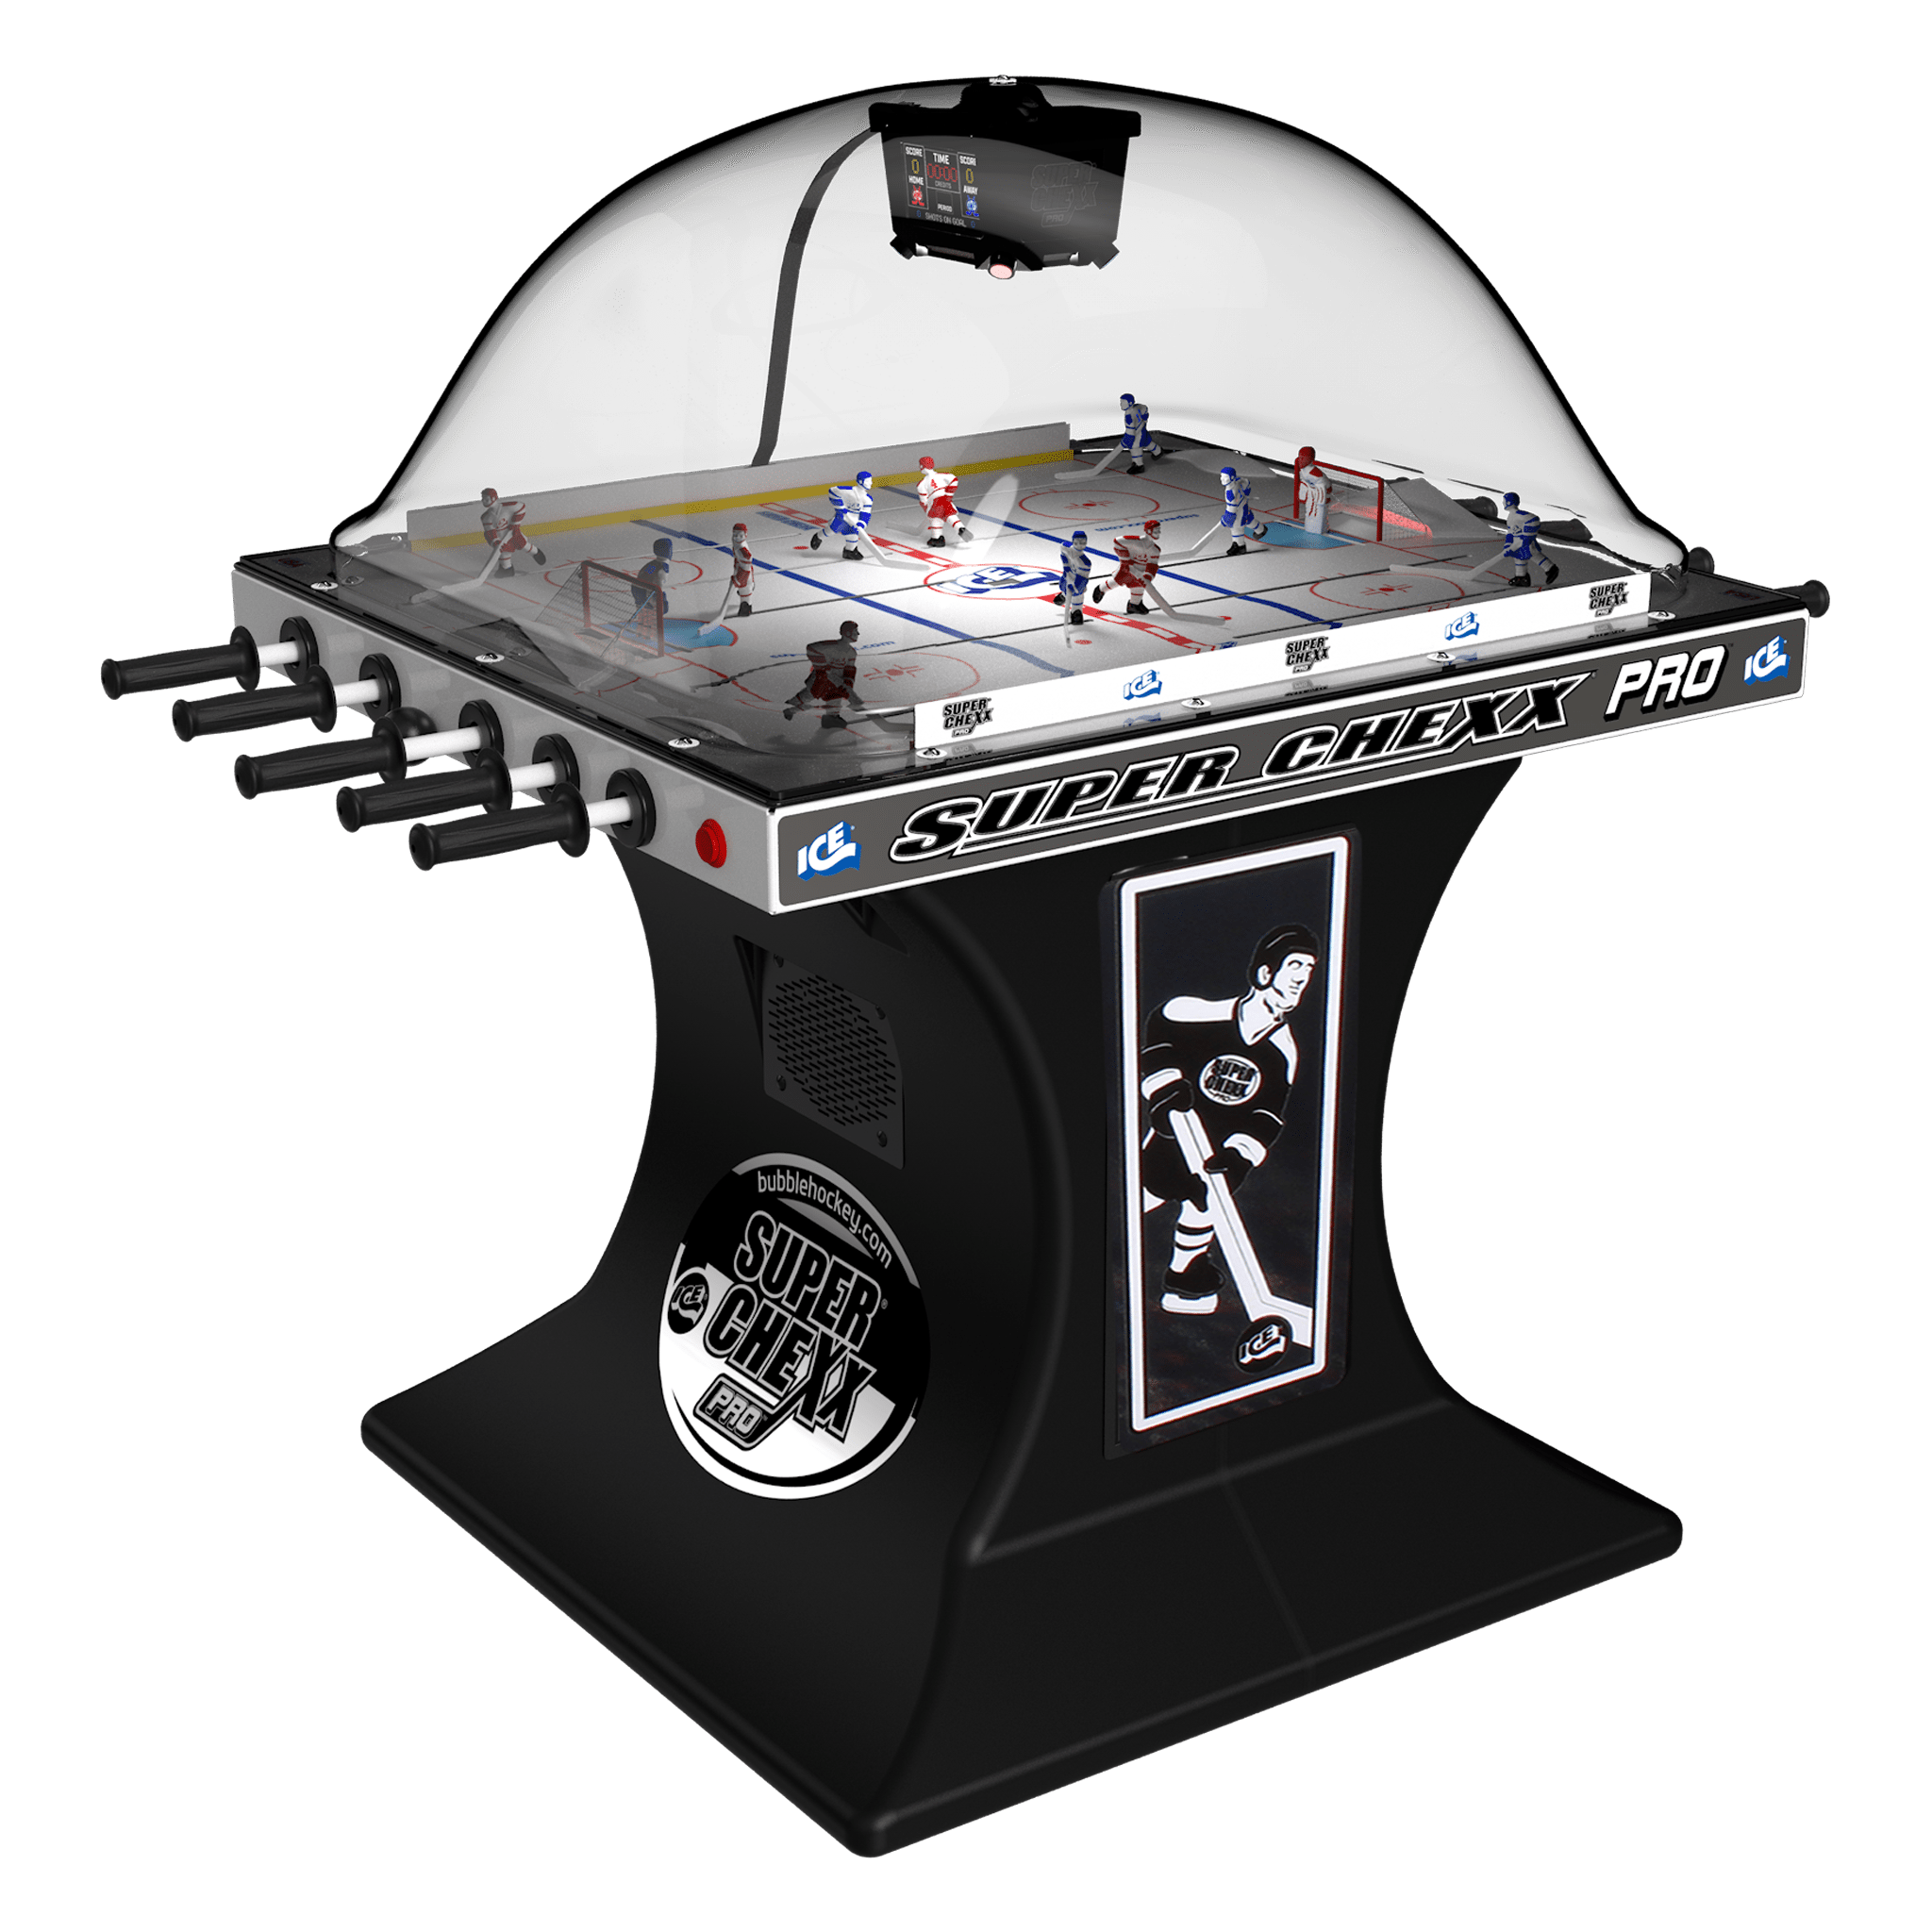 Super Chexx PRO® Bubble Hockey